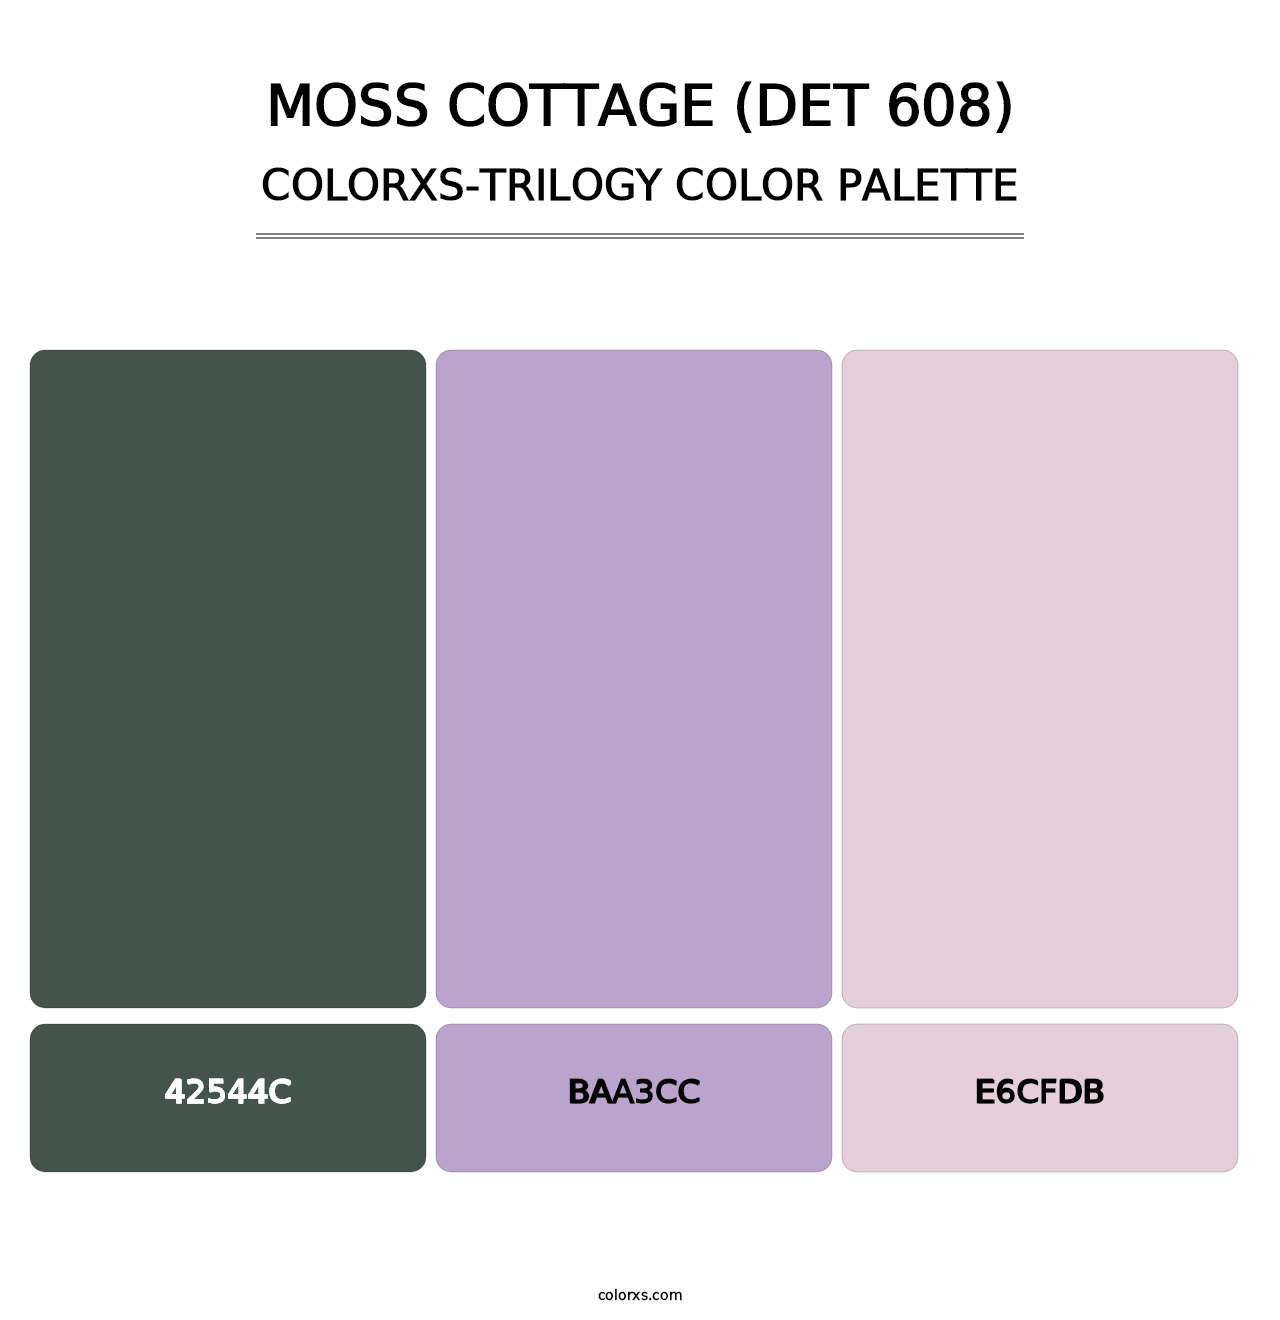 Moss Cottage (DET 608) - Colorxs Trilogy Palette